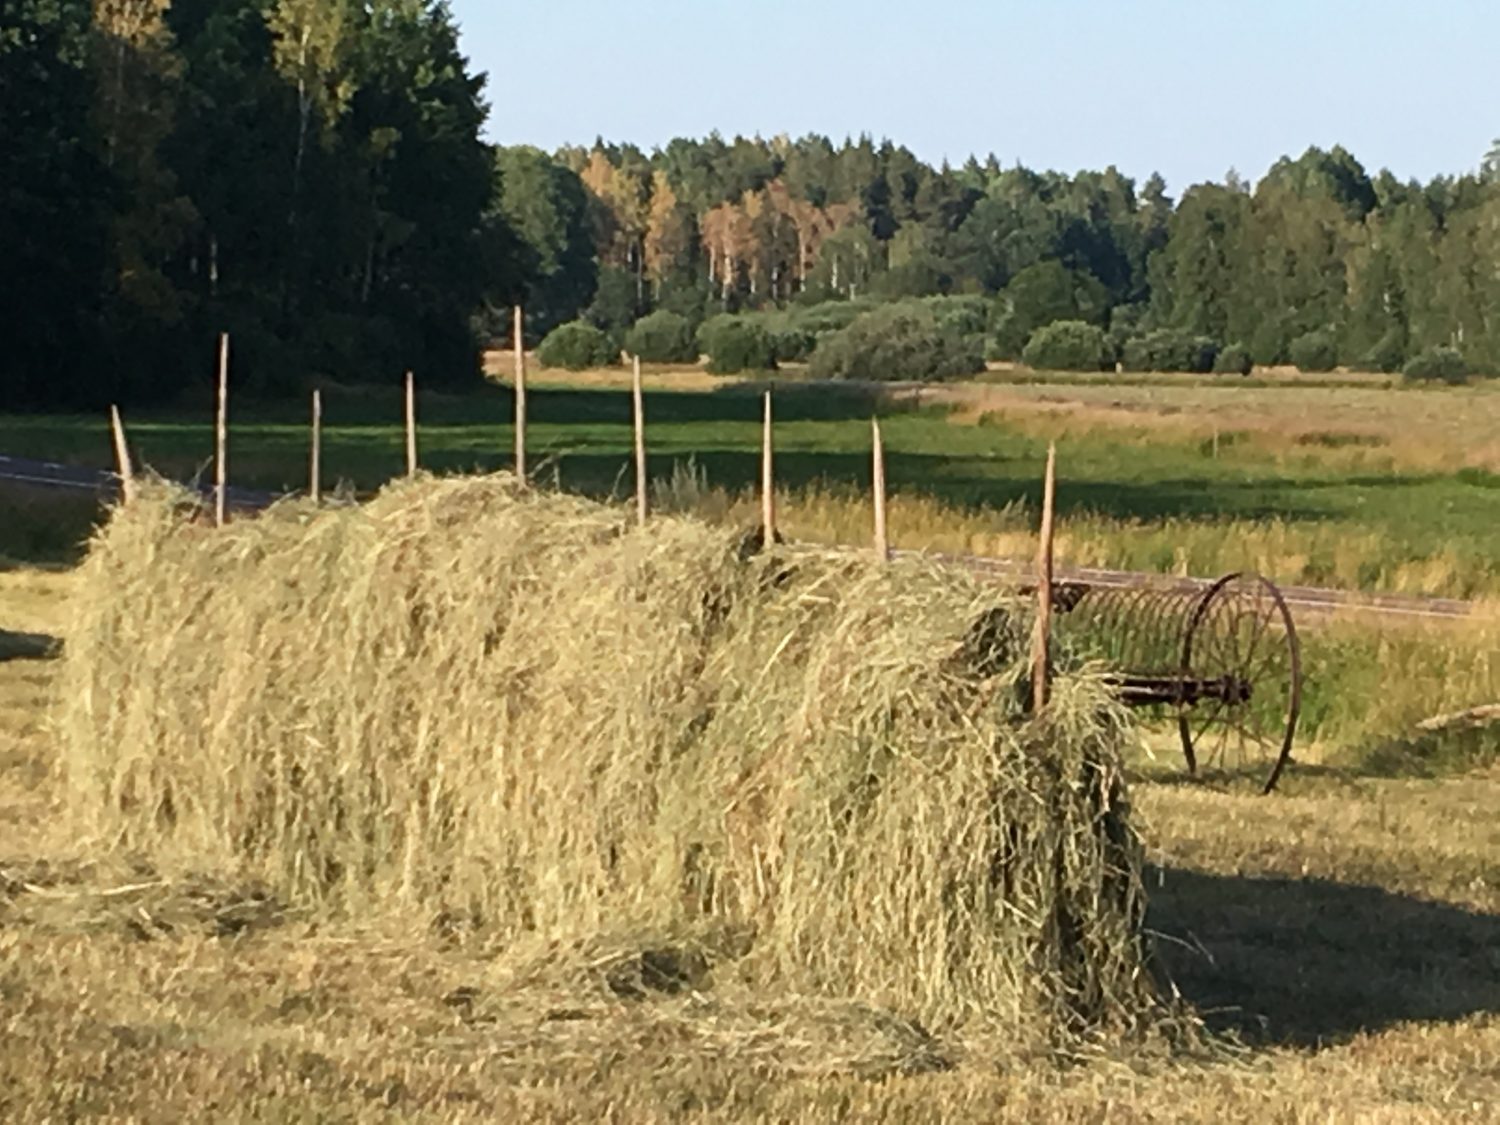 Harvest in Sweden